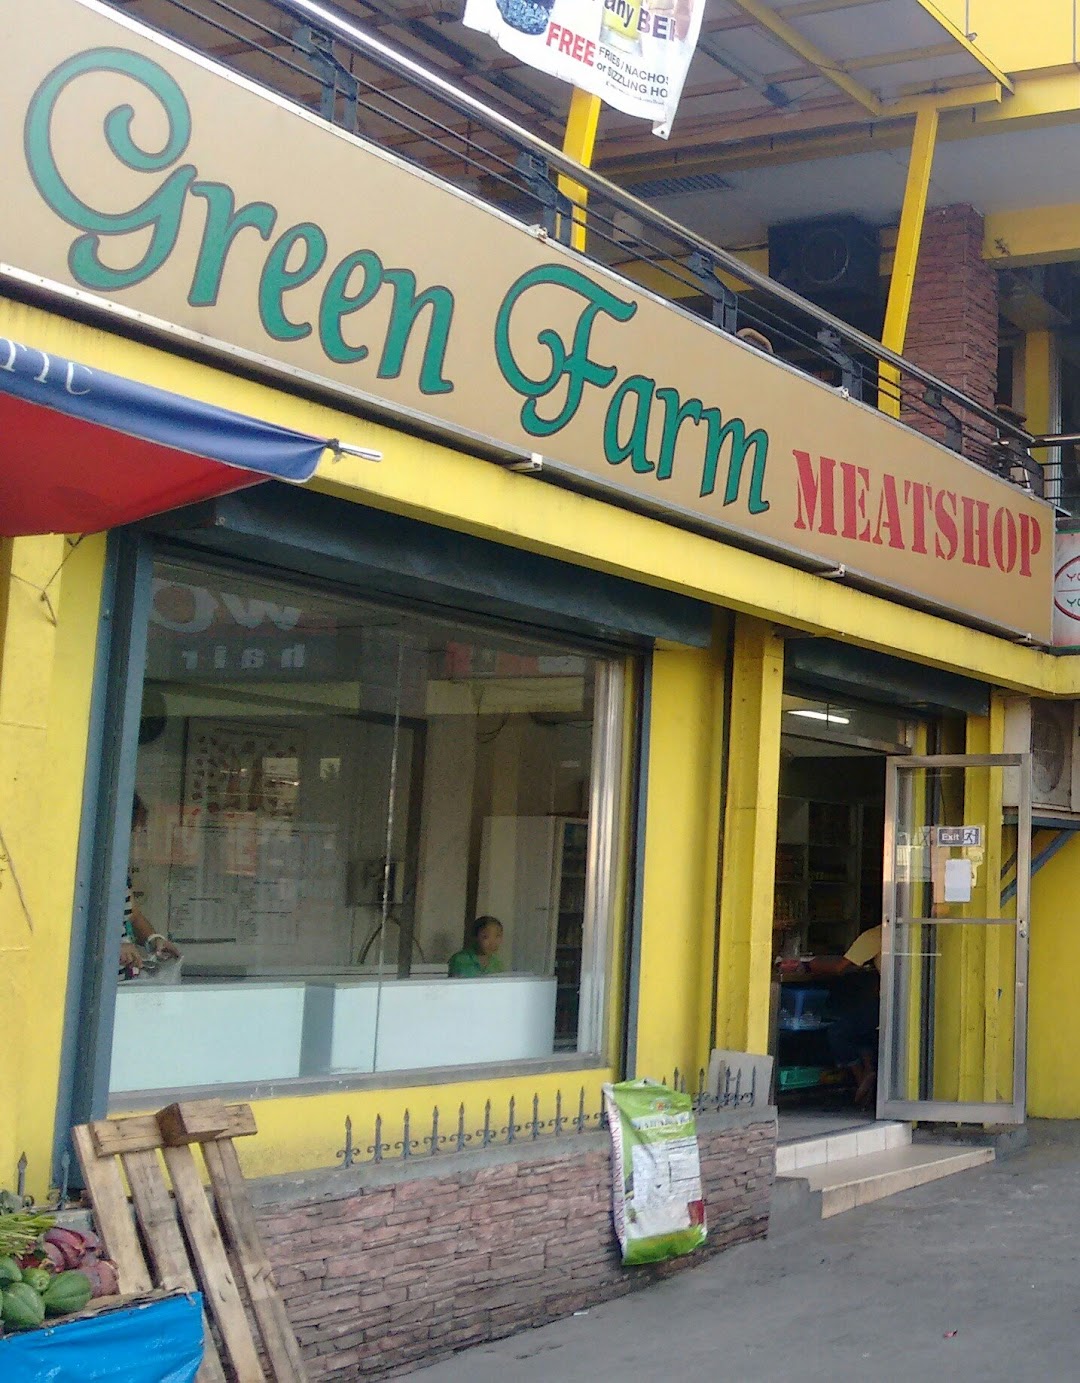 Green Farm Meatshop